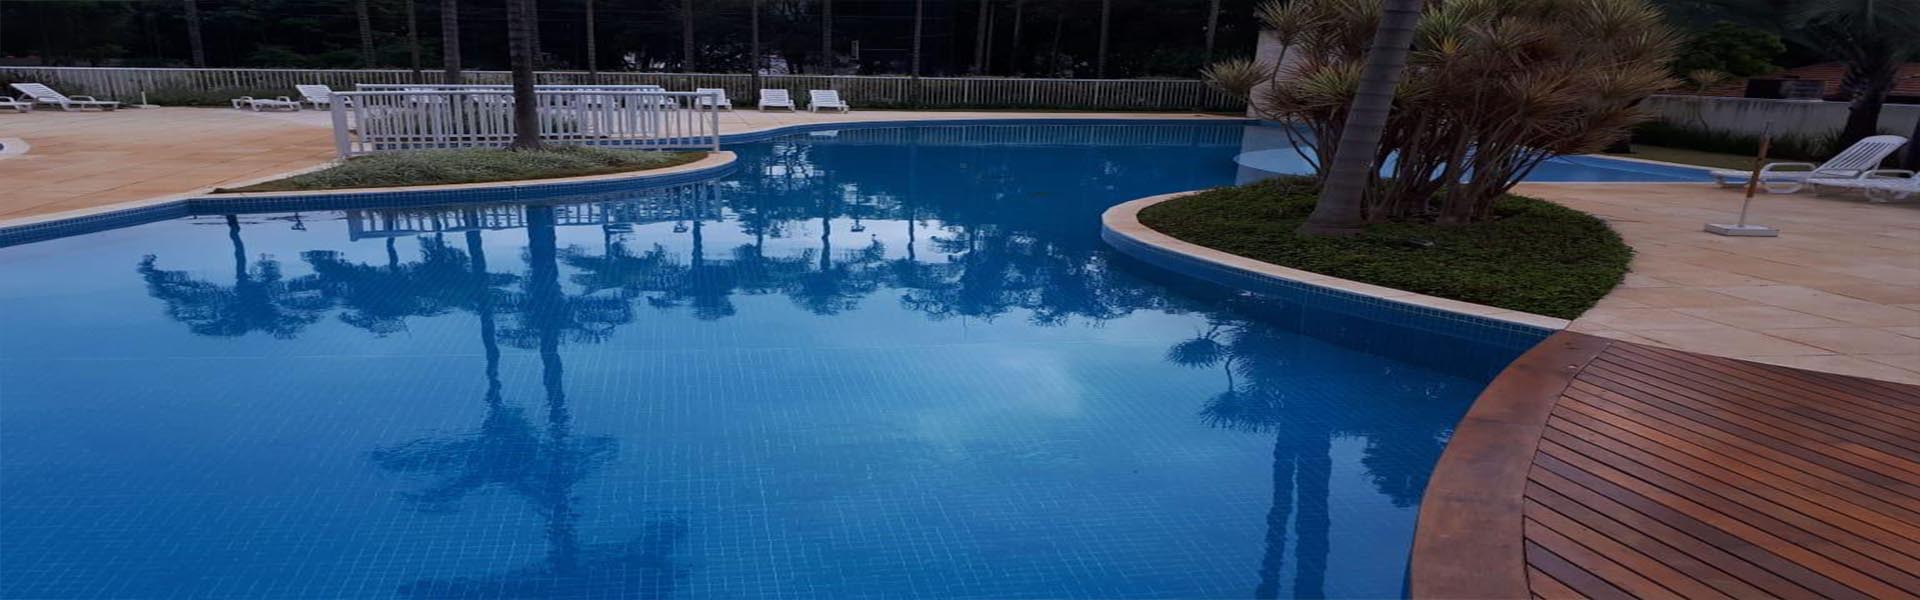 Empreza especializada na limpeza emergencial de piscinas em São Paulo